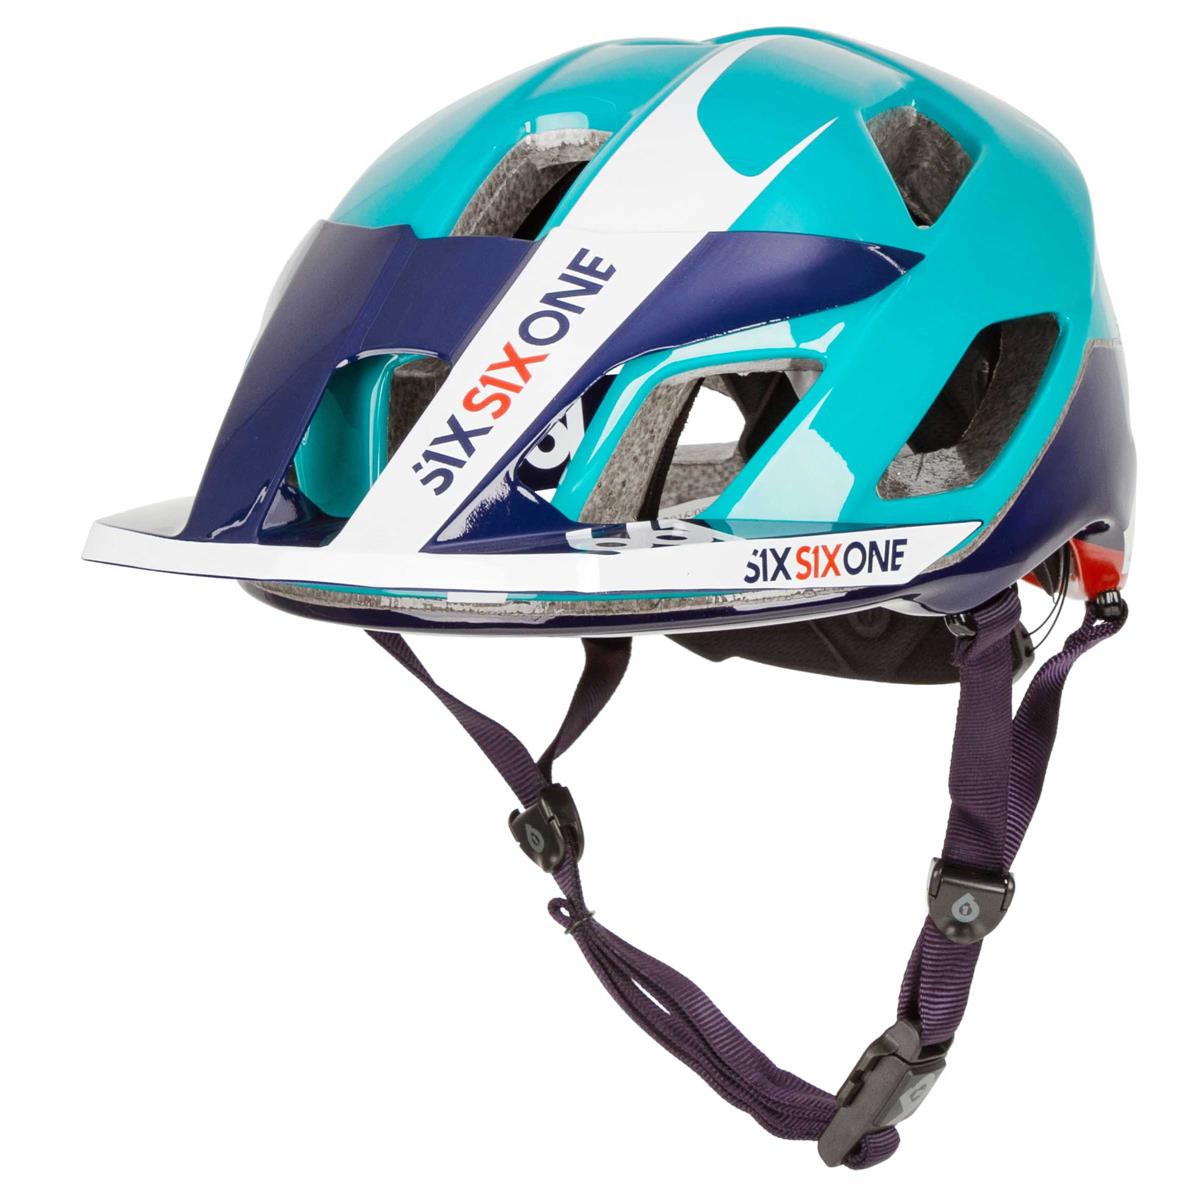 SixSixOne Enduro MTB-Helm Evo AM Orange/Blau